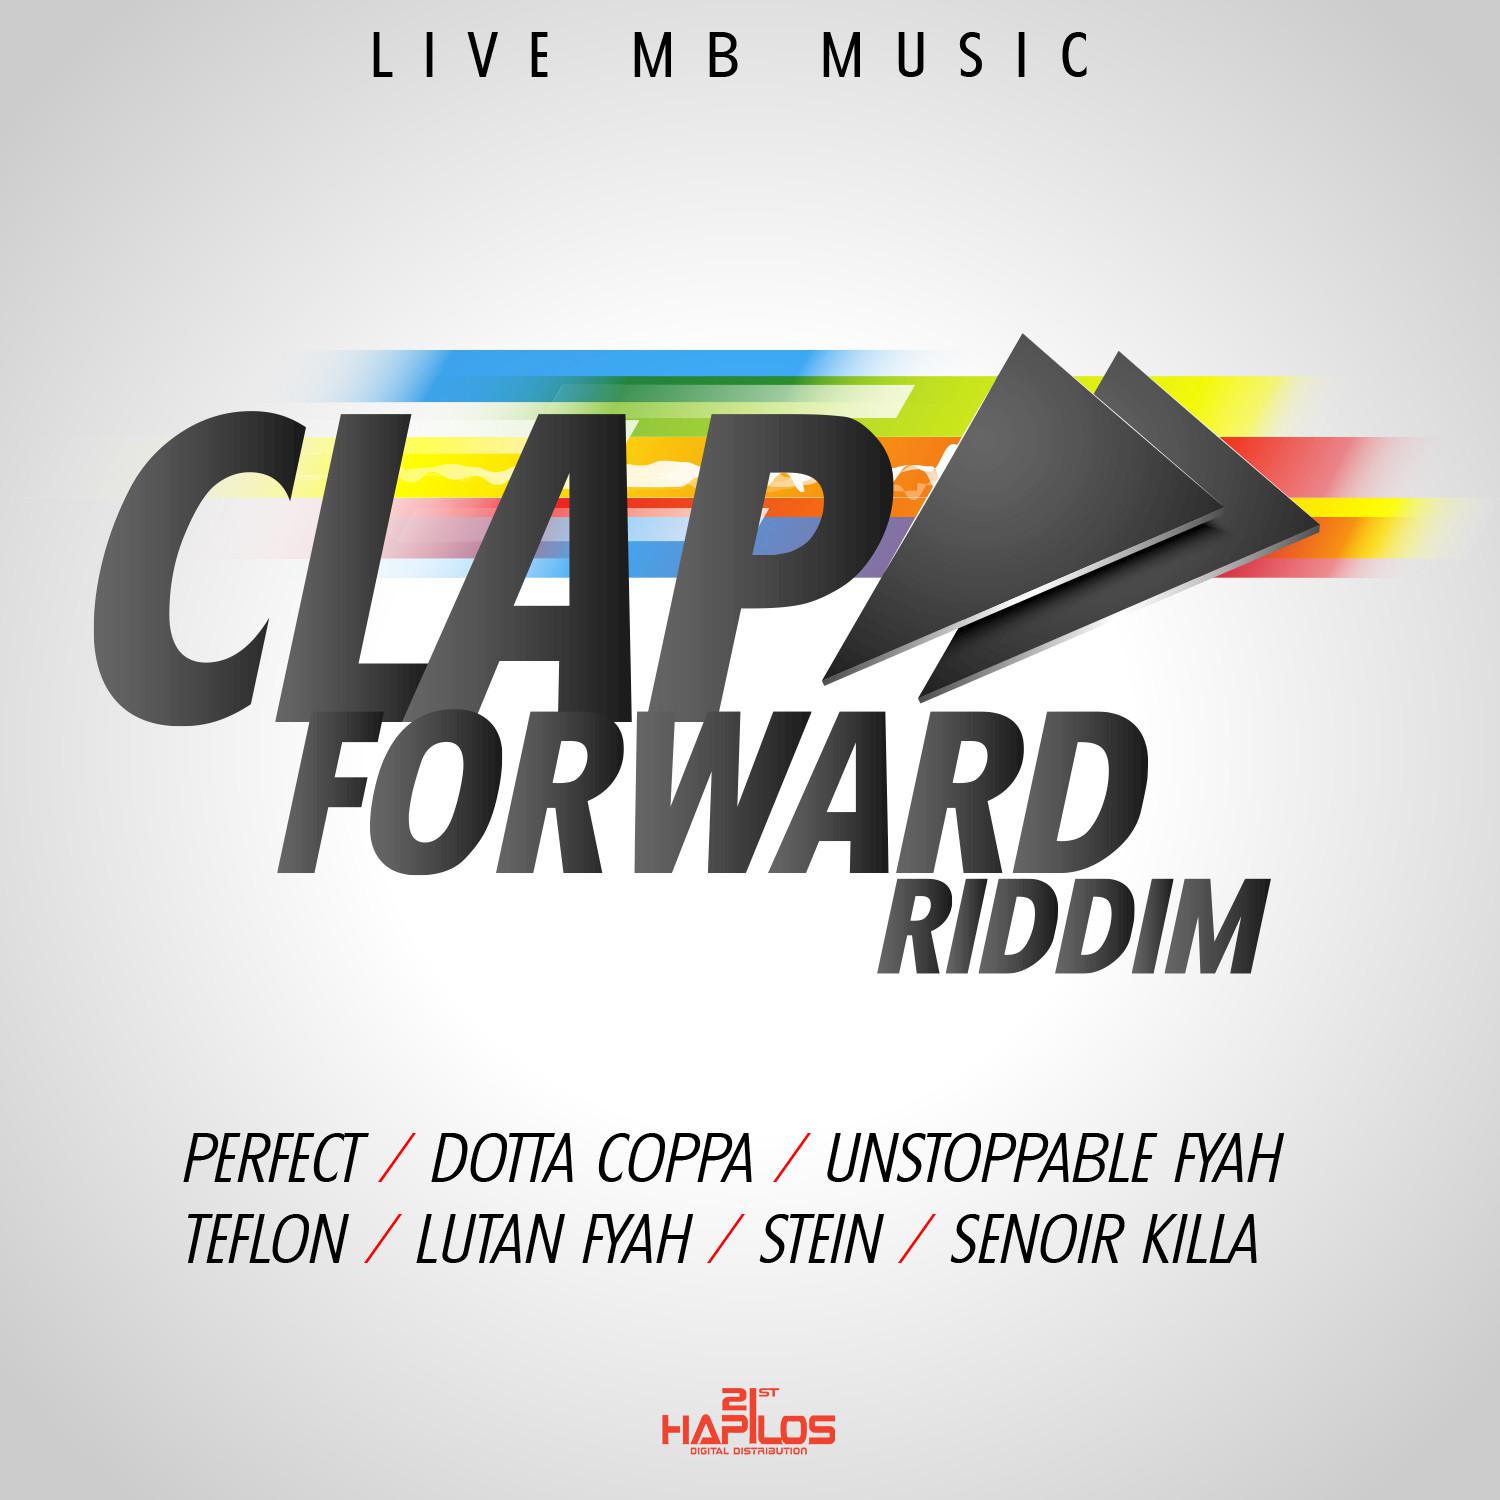 Clap Forward Riddim